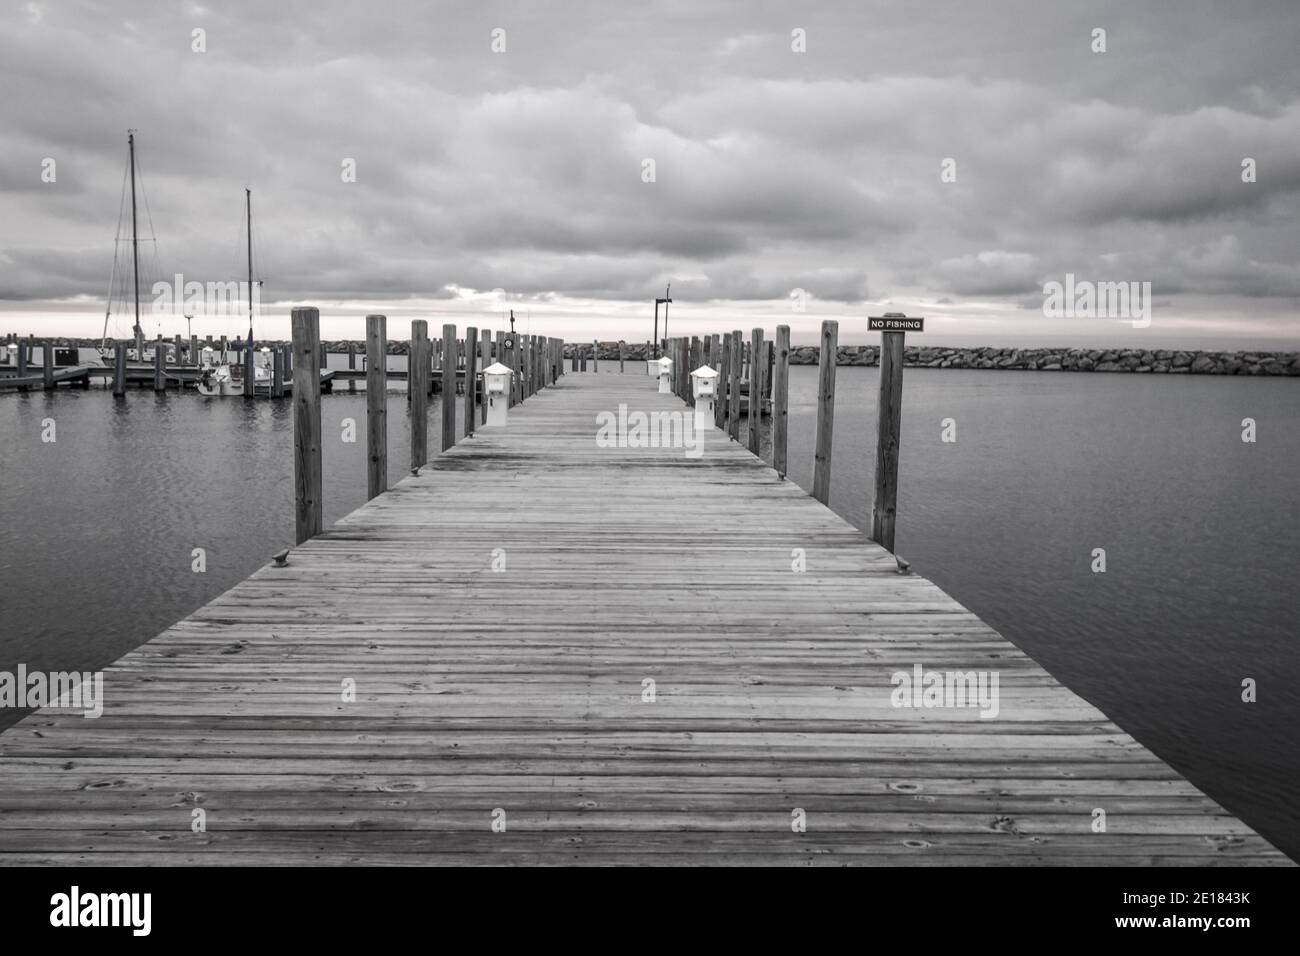 Le paysage noir et blanc d'un quai de promenade s'étend jusqu'à l'horizon sur la côte des Grands Lacs du Michigan, par une journée nuageux couverte. Banque D'Images